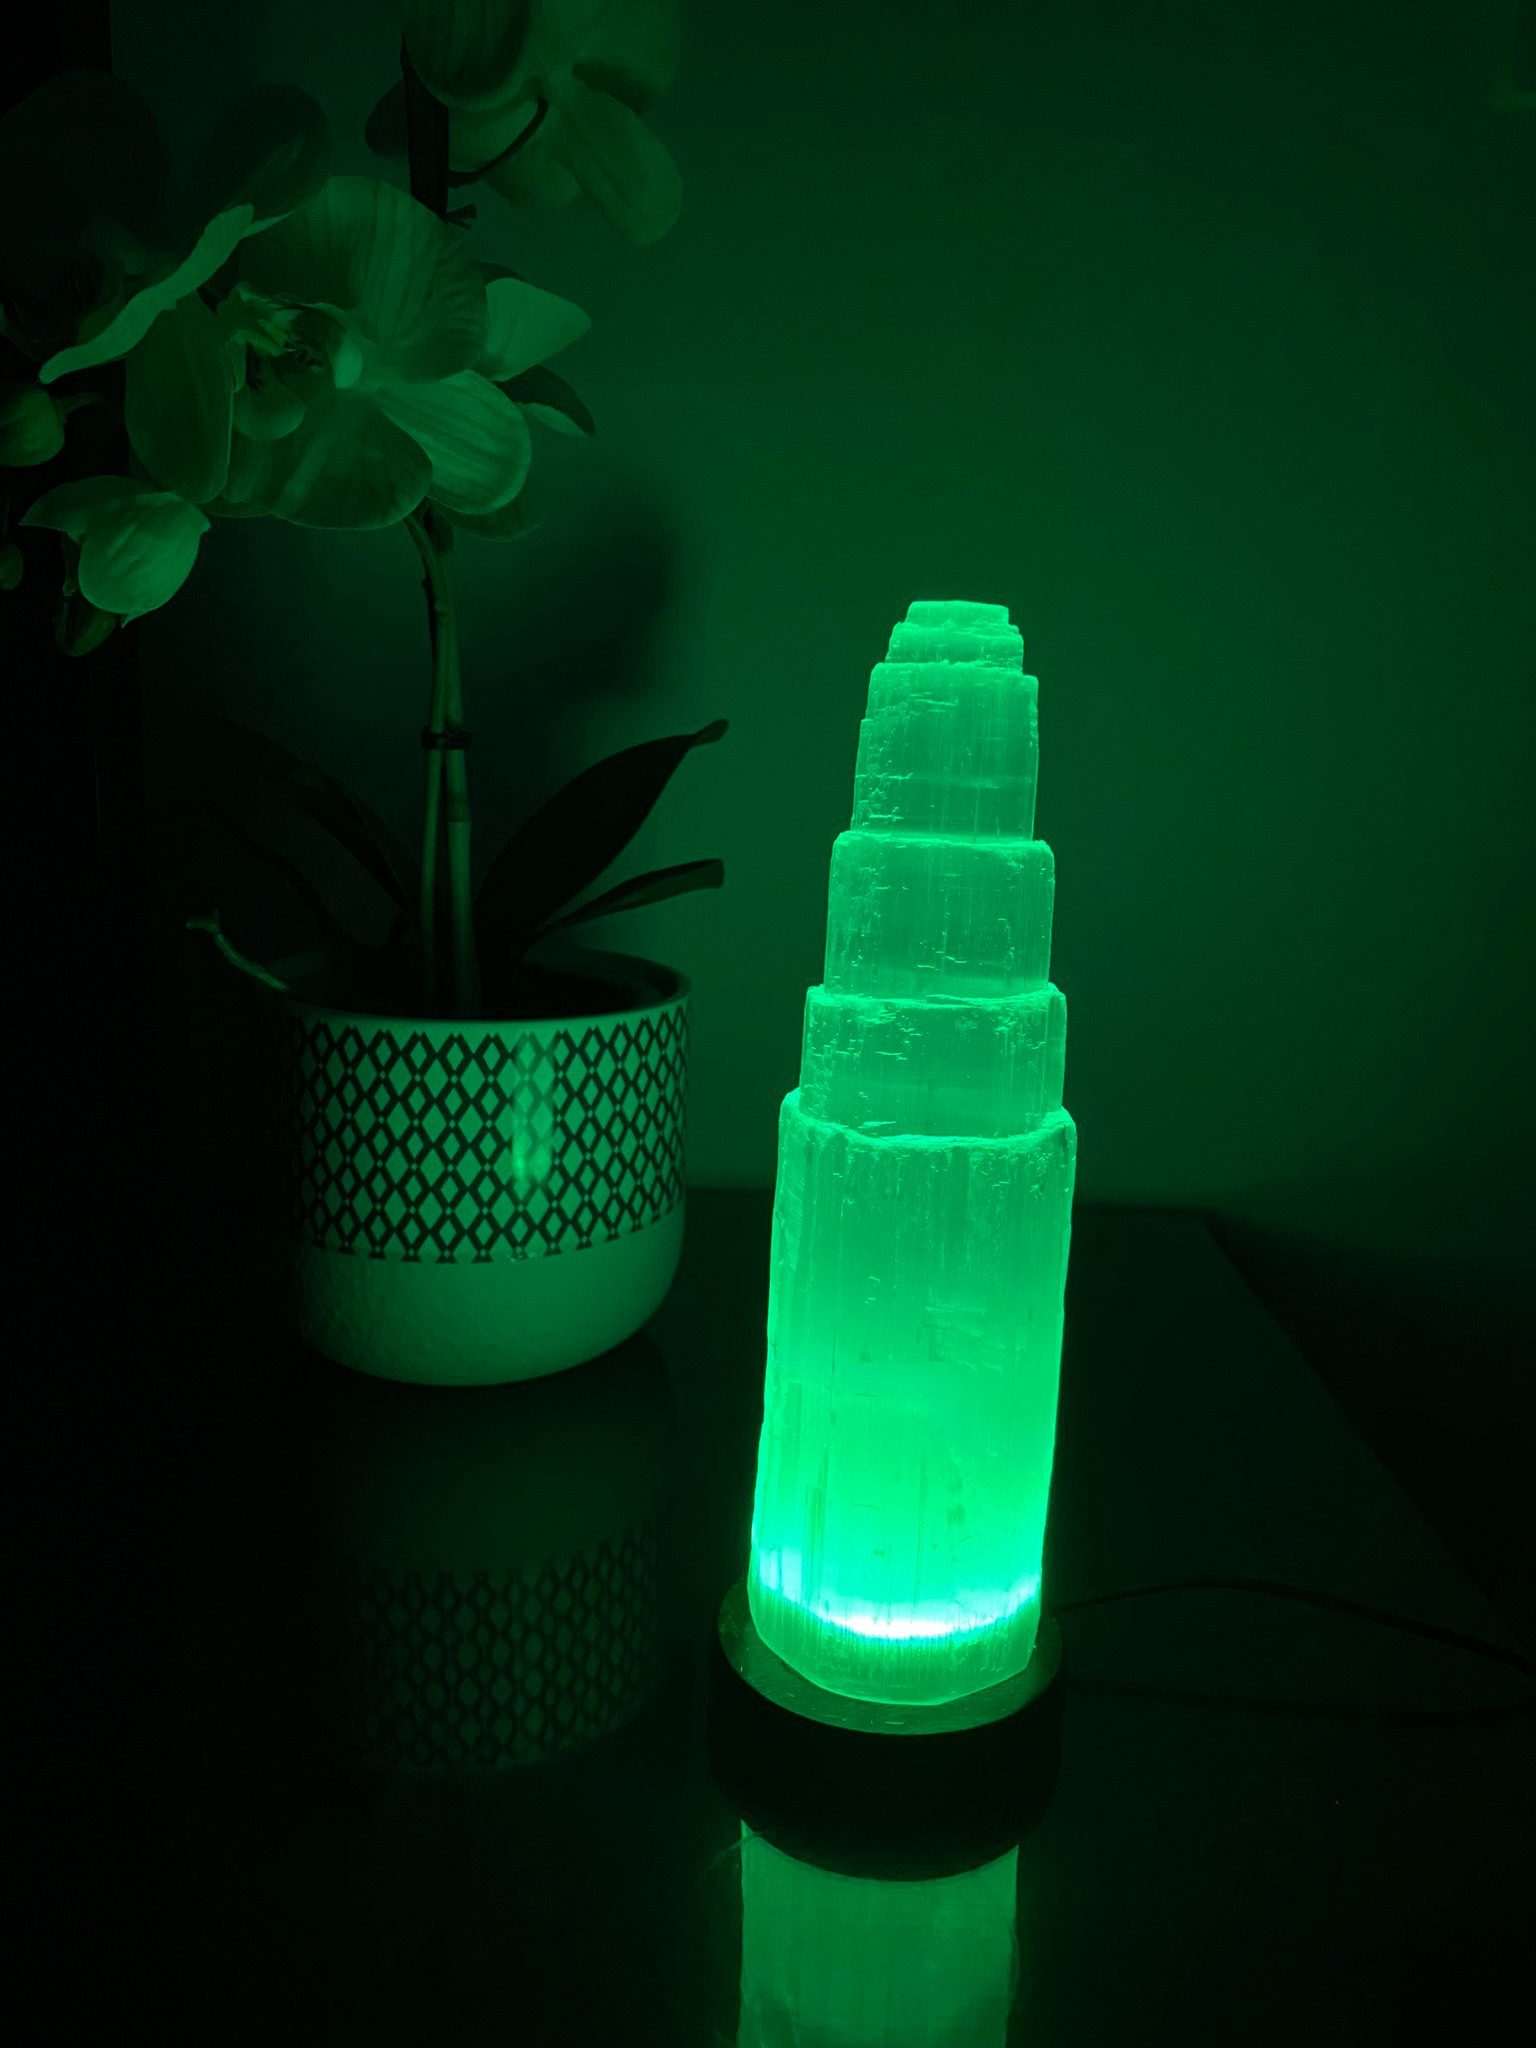 Heimtex LED tischleuchte lampe Kristall Farbwechsel Nachttischlampe Selenite Turm Lampe Tischlampe